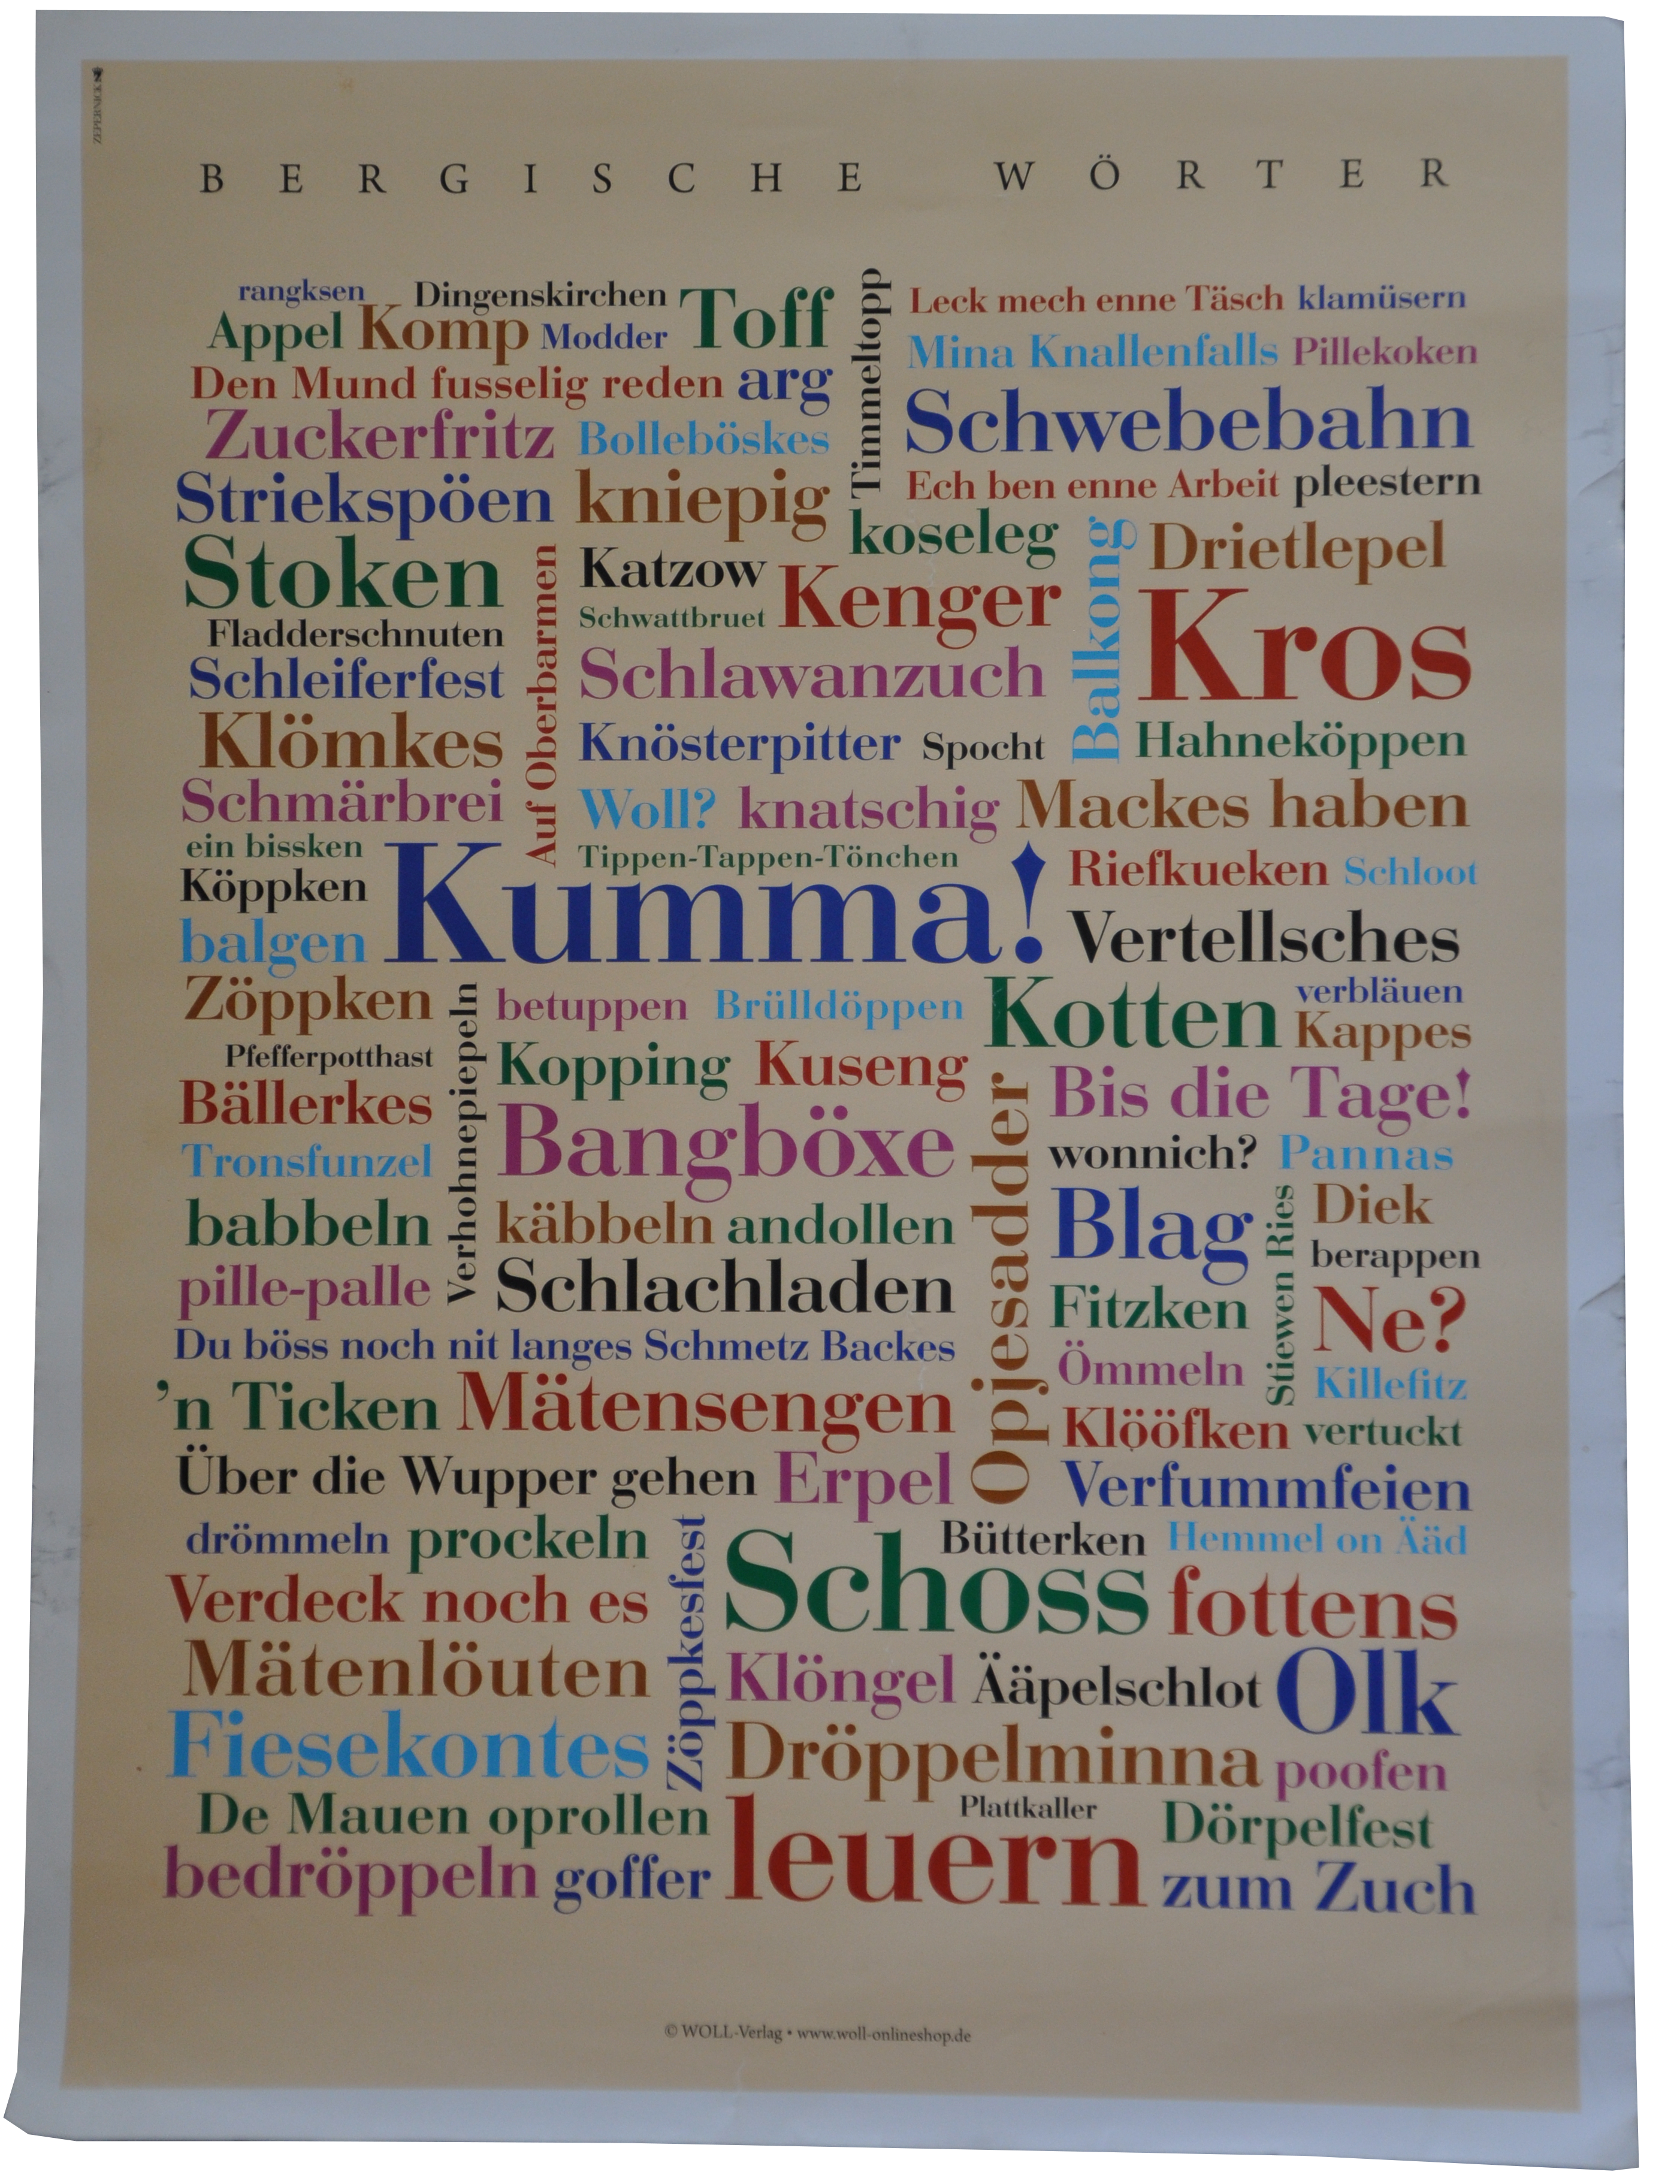 Poster Bergische Wörter klein 30x40 cm